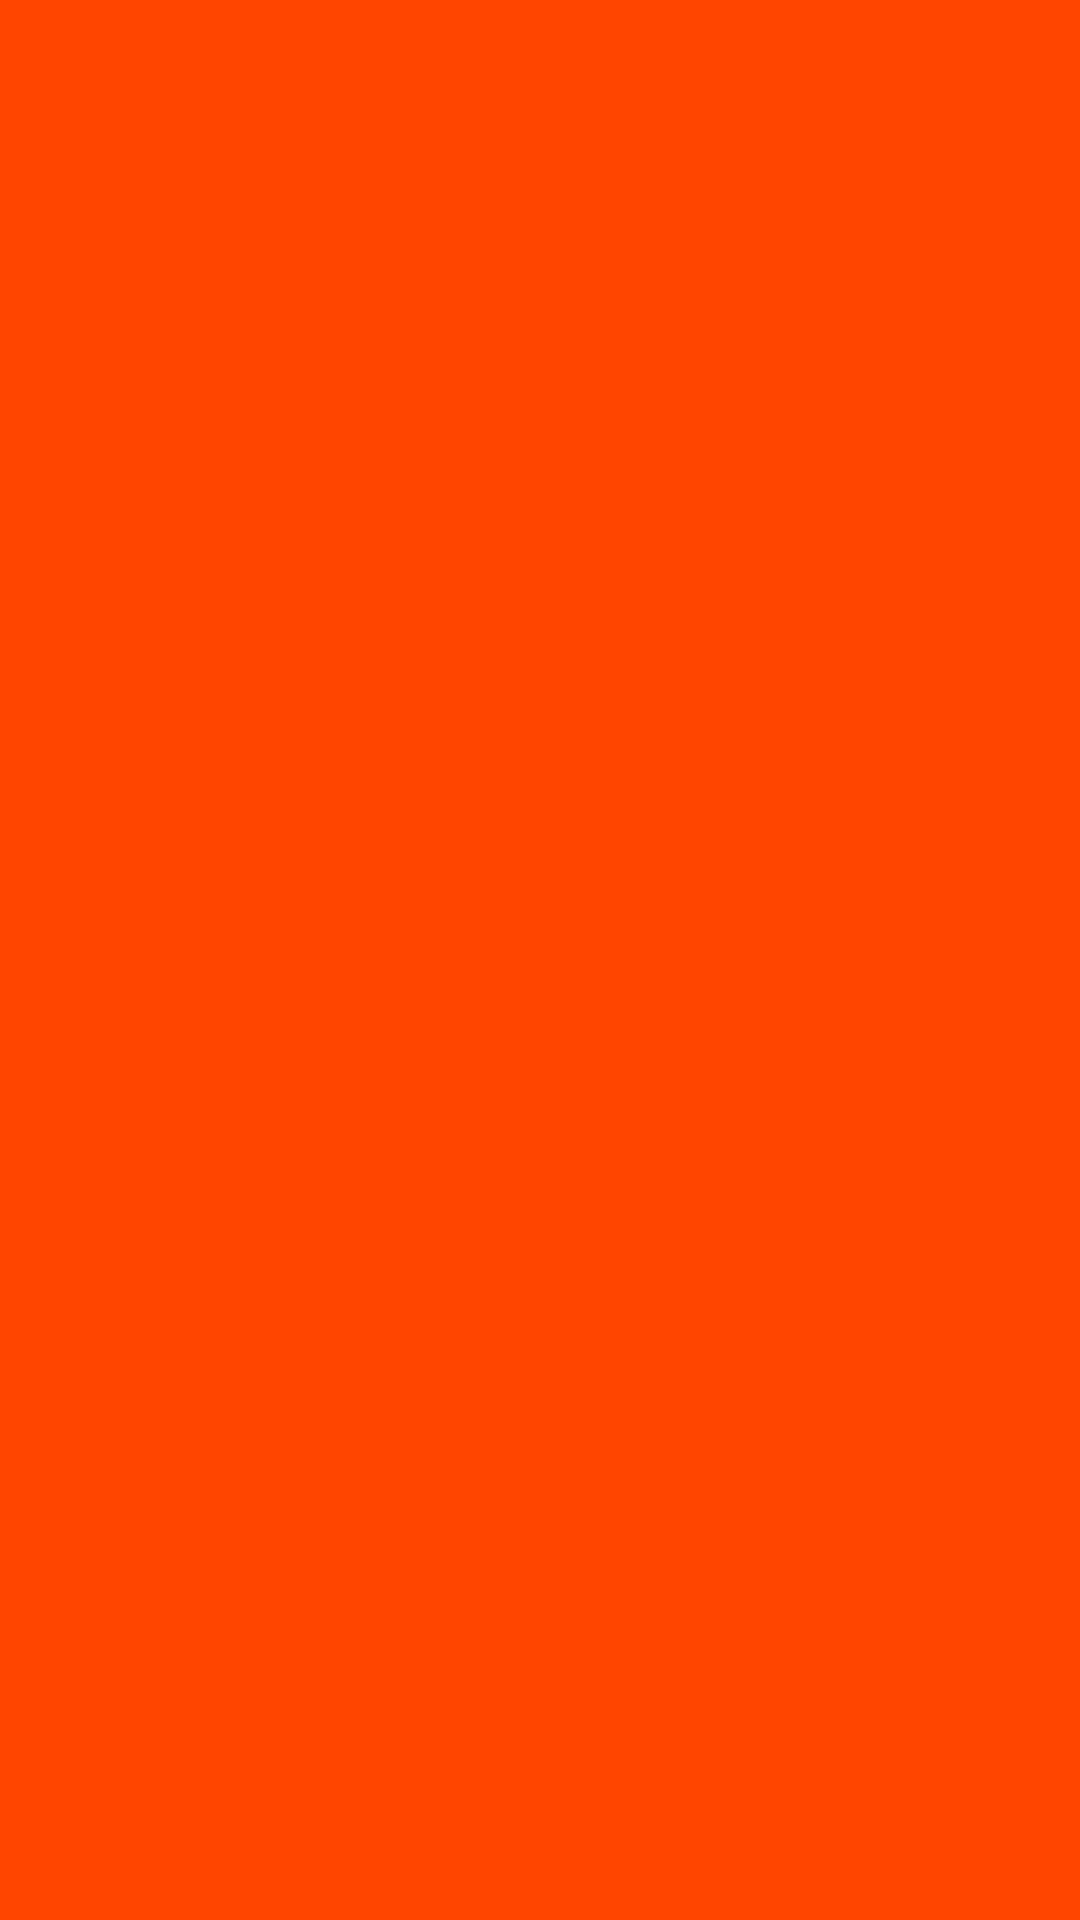 Orange-red Solid Color: Sắc cam đỏ sẽ mang lại cho bạn cảm giác ấm áp và năng động. Bức ảnh với sắc cam đỏ nguyên khối chắc chắn sẽ làm bạn say đắm.